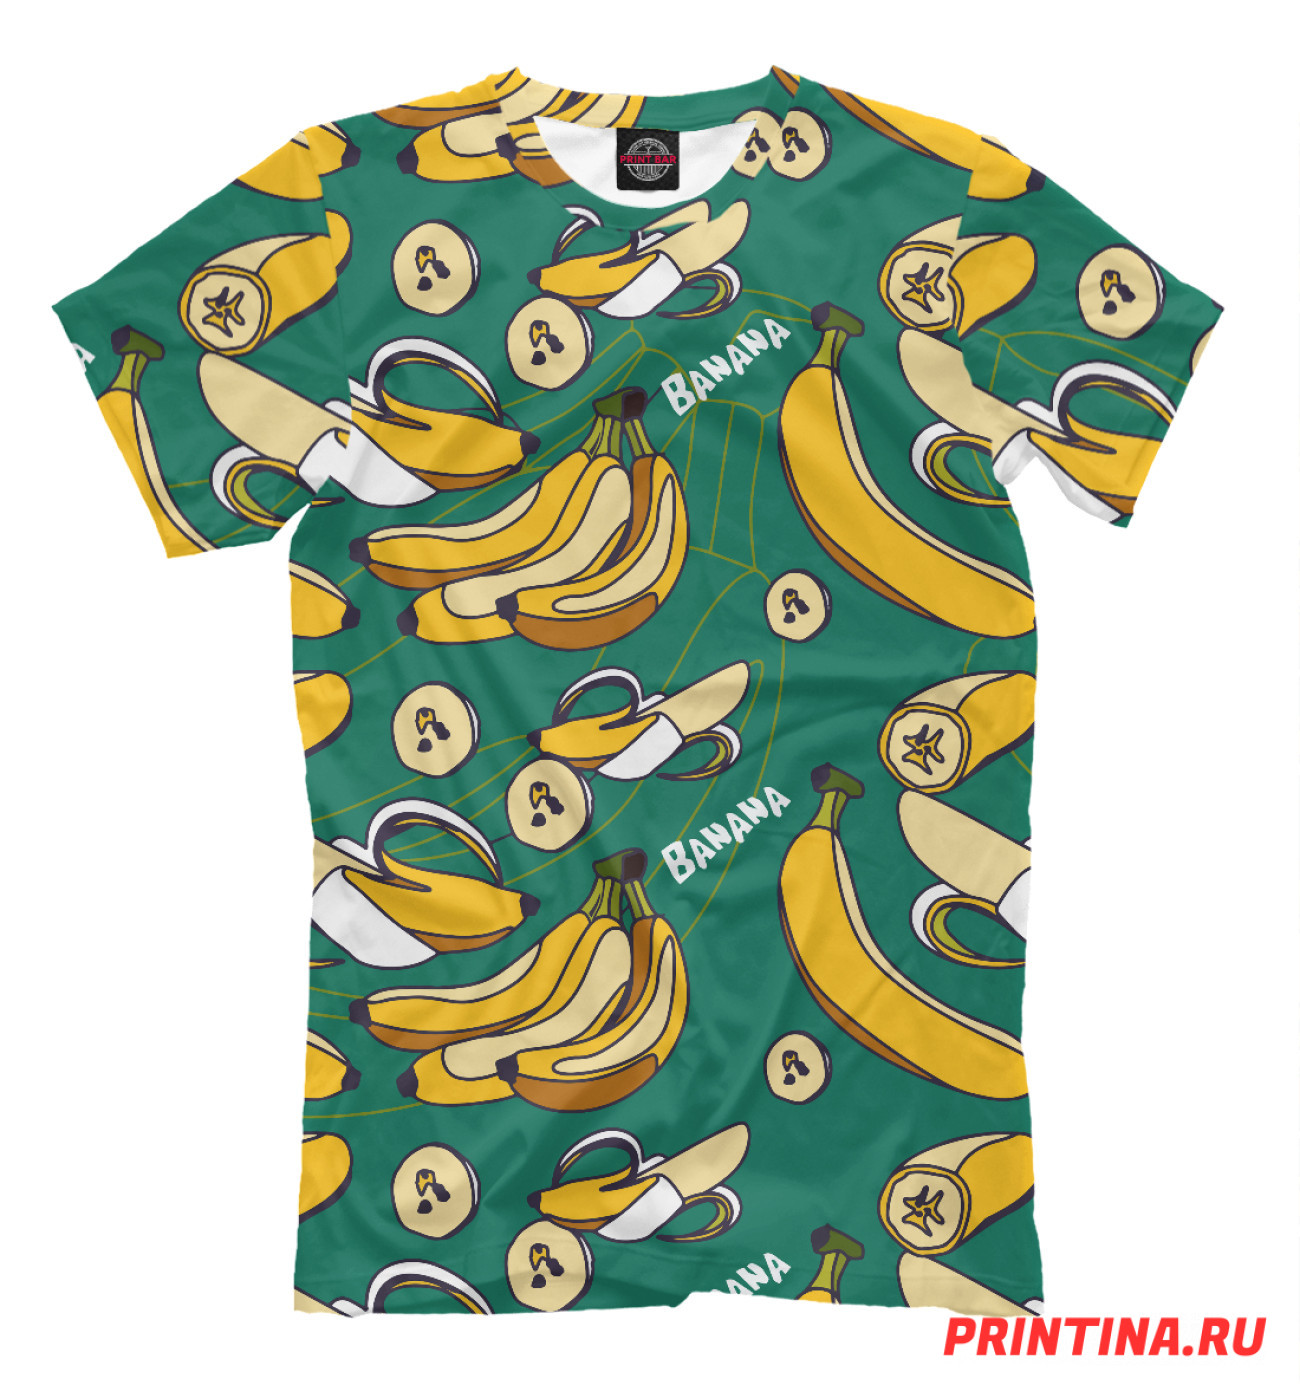 Мужская Футболка Banana pattern, артикул: BAN-387694-fut-2